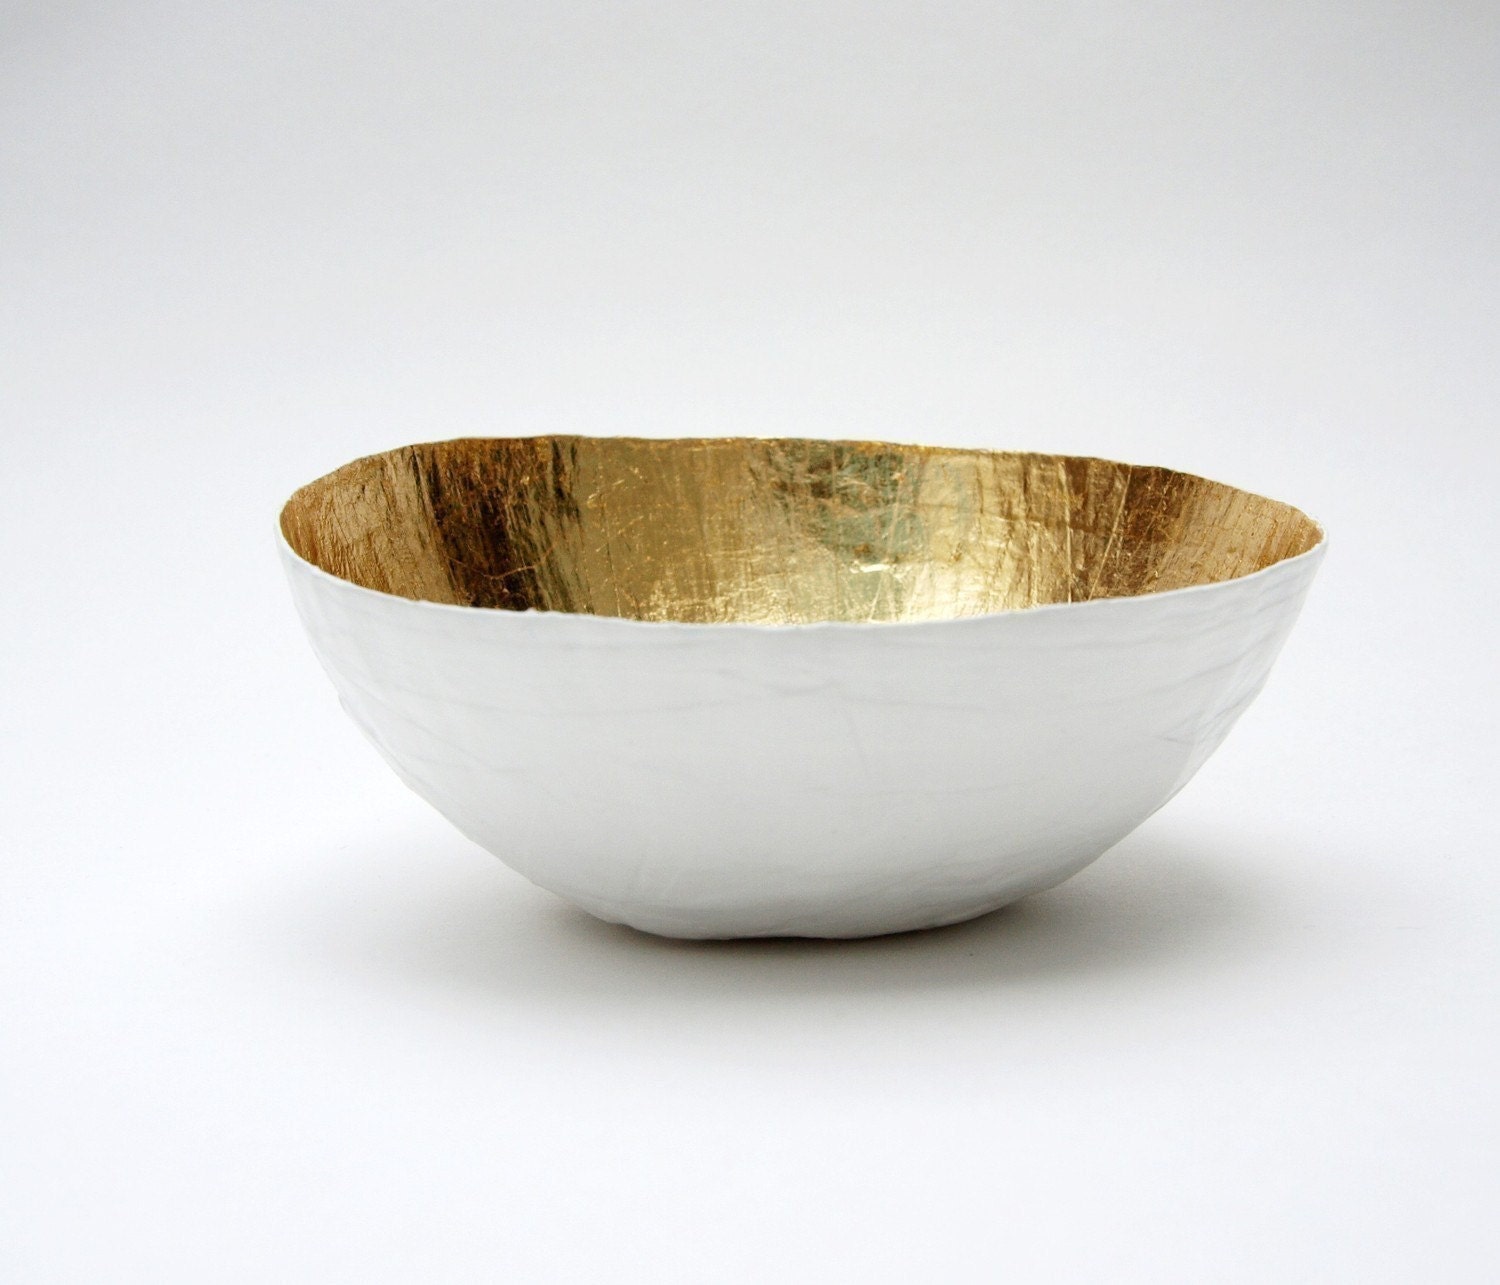 Paper Mache Bowl White and Gold - The Mini